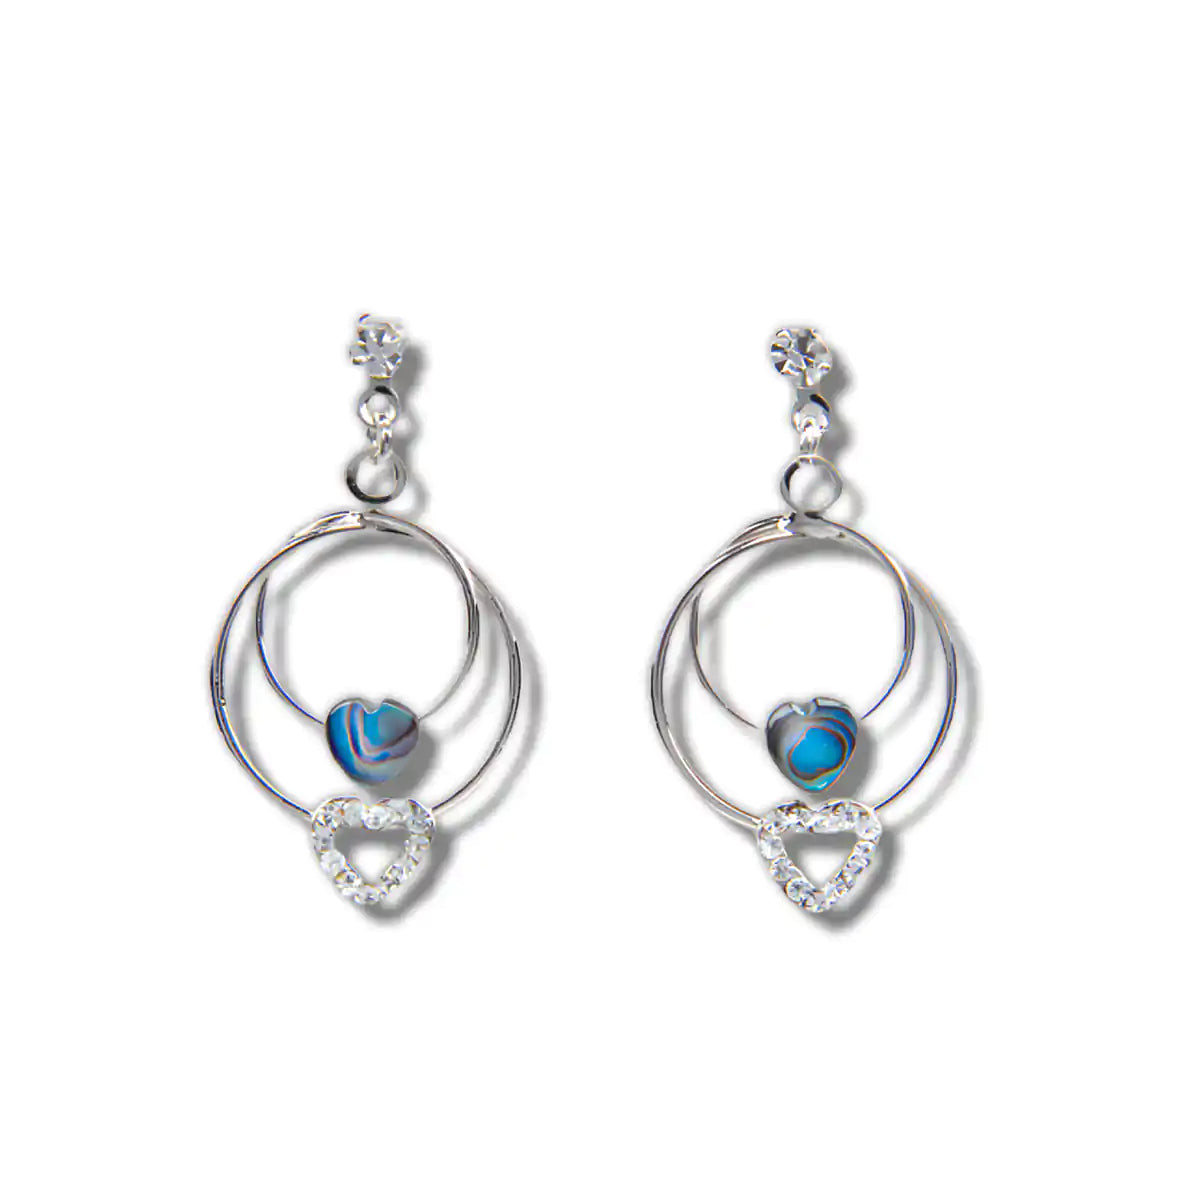 Glacier pearle true love earrings